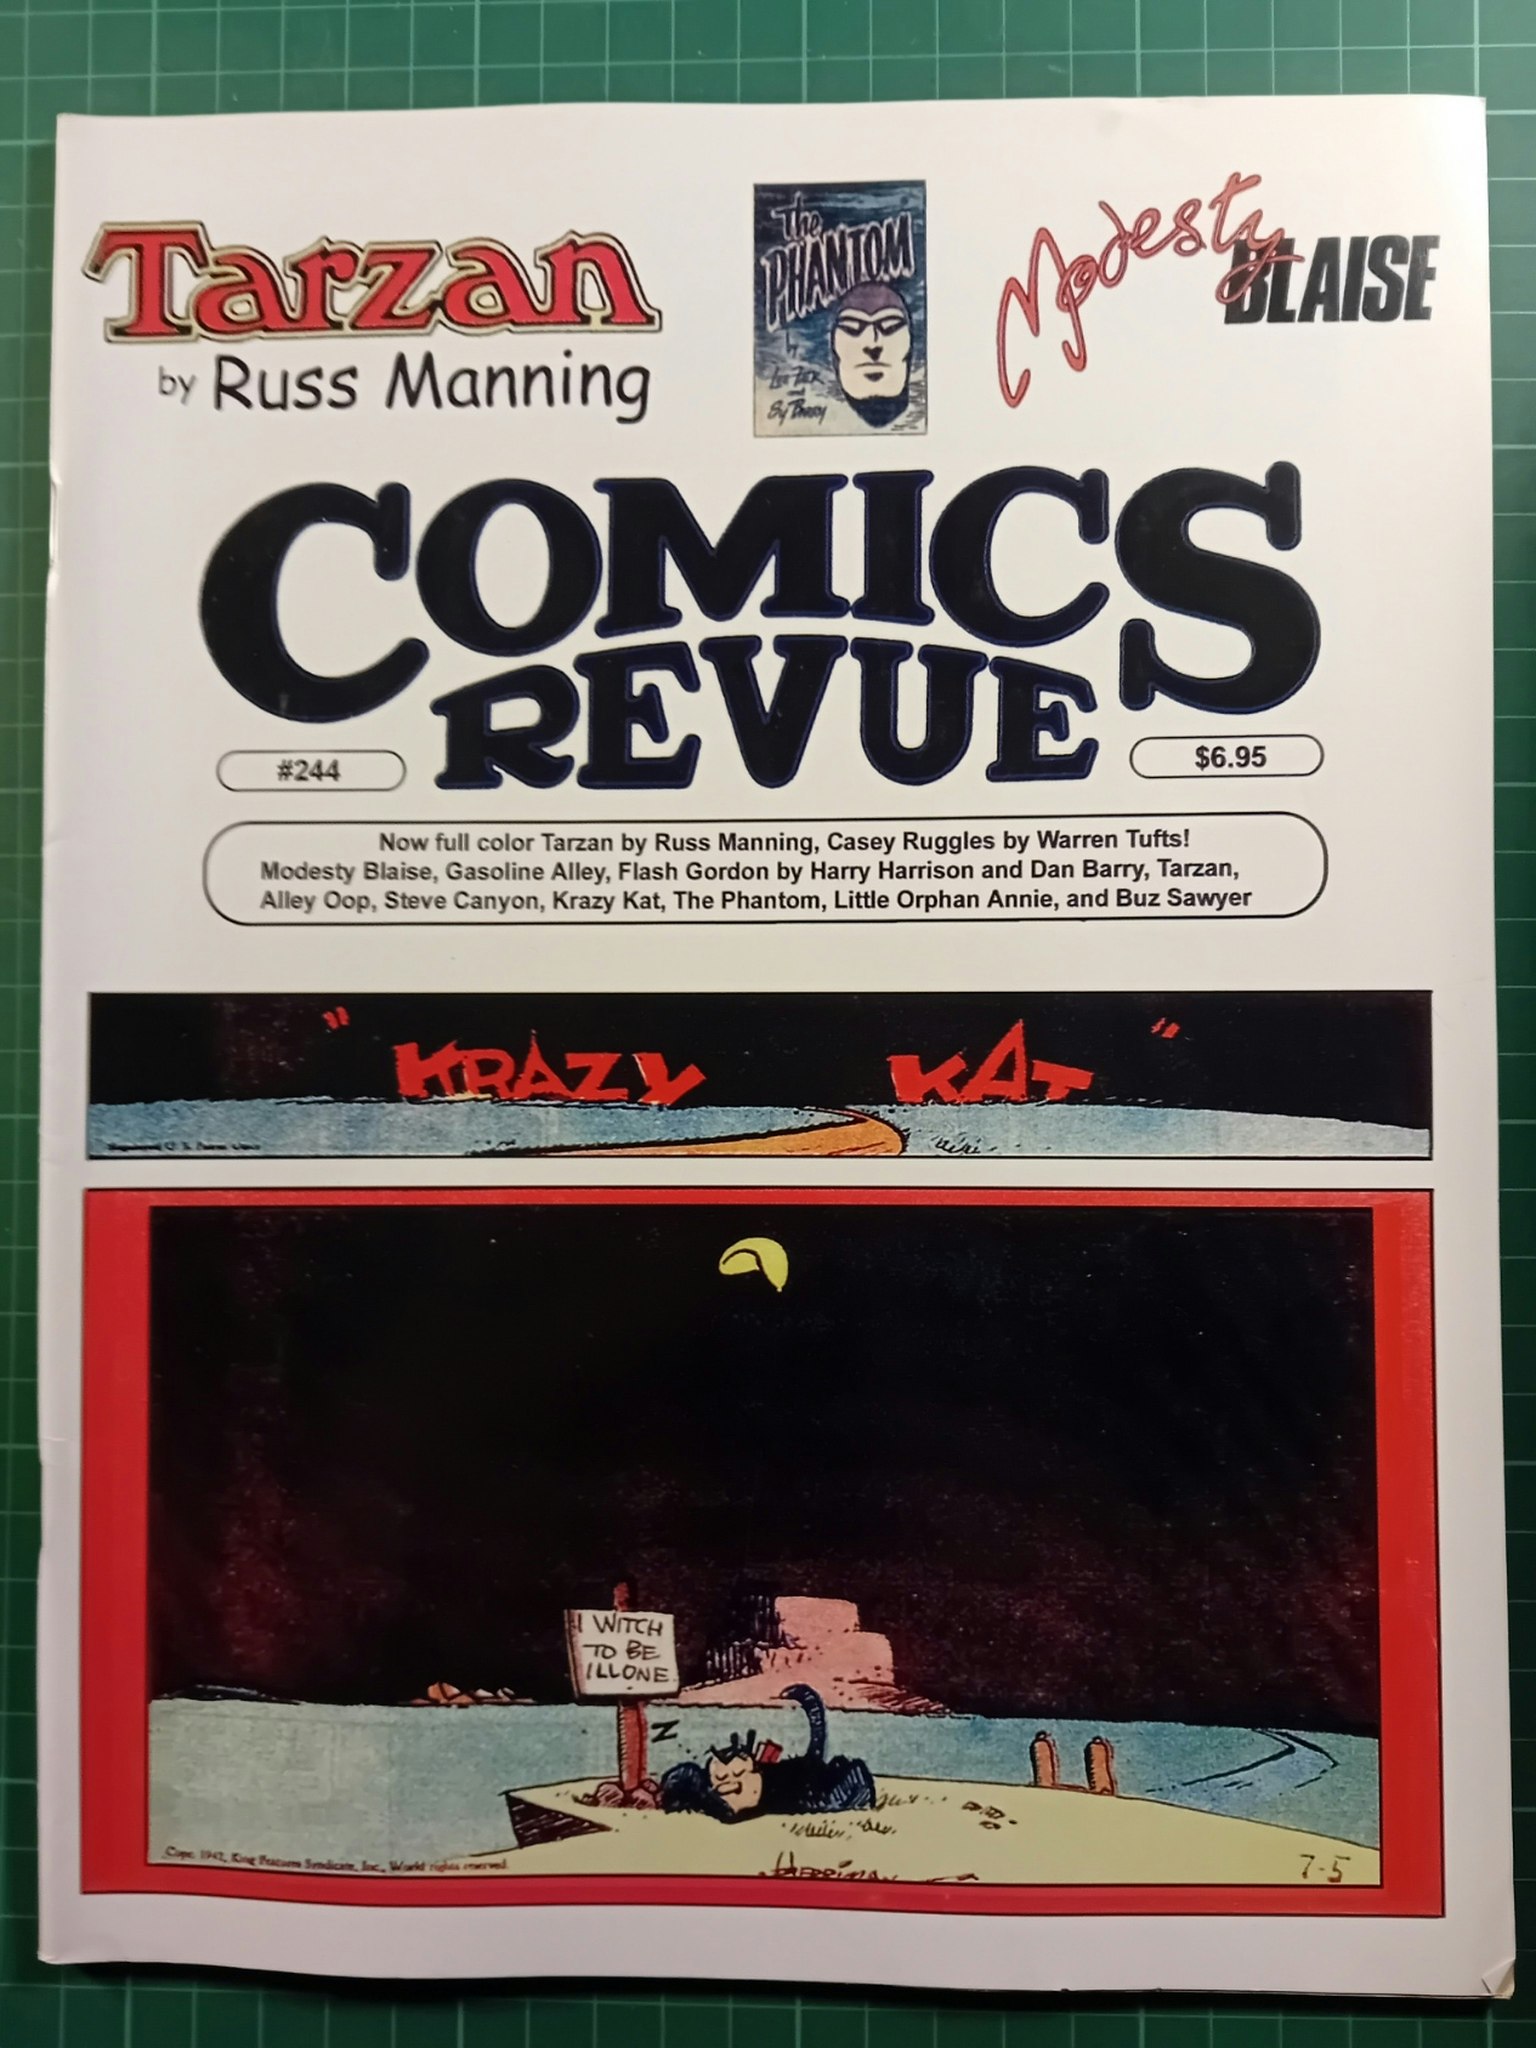 Comics revue #244